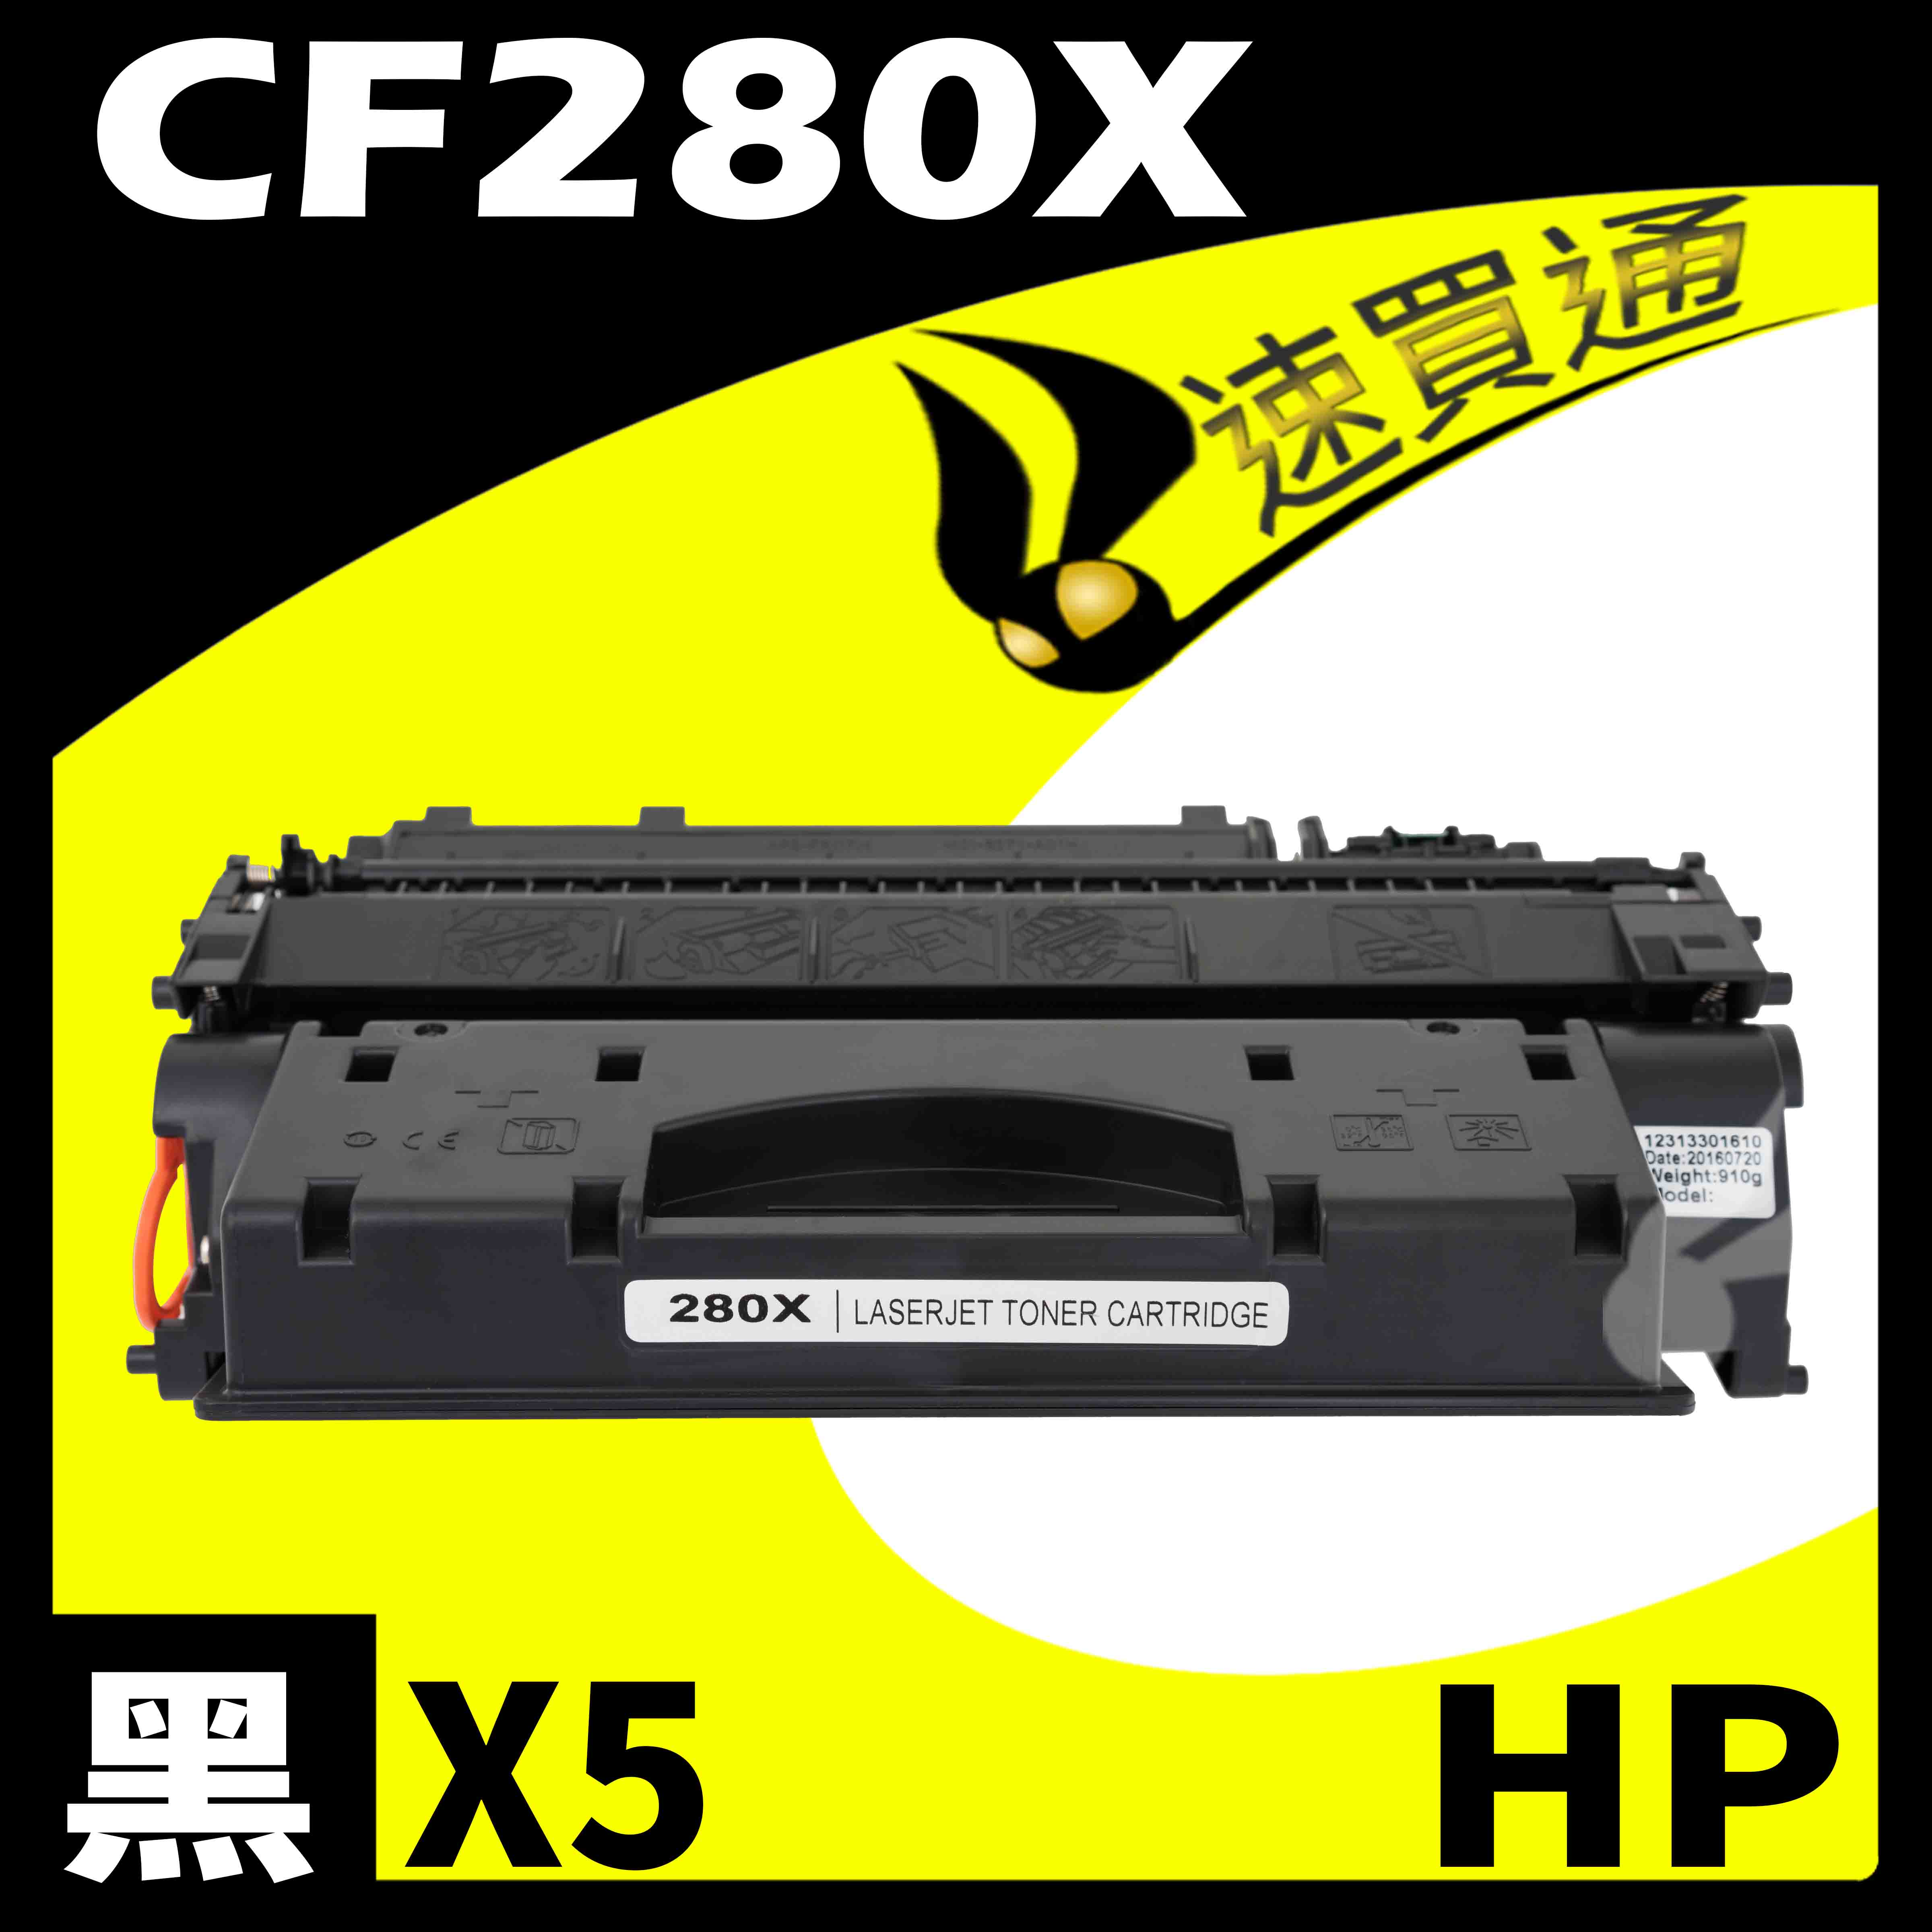 【速買通】超值5件組 HP CF280X 相容碳粉匣